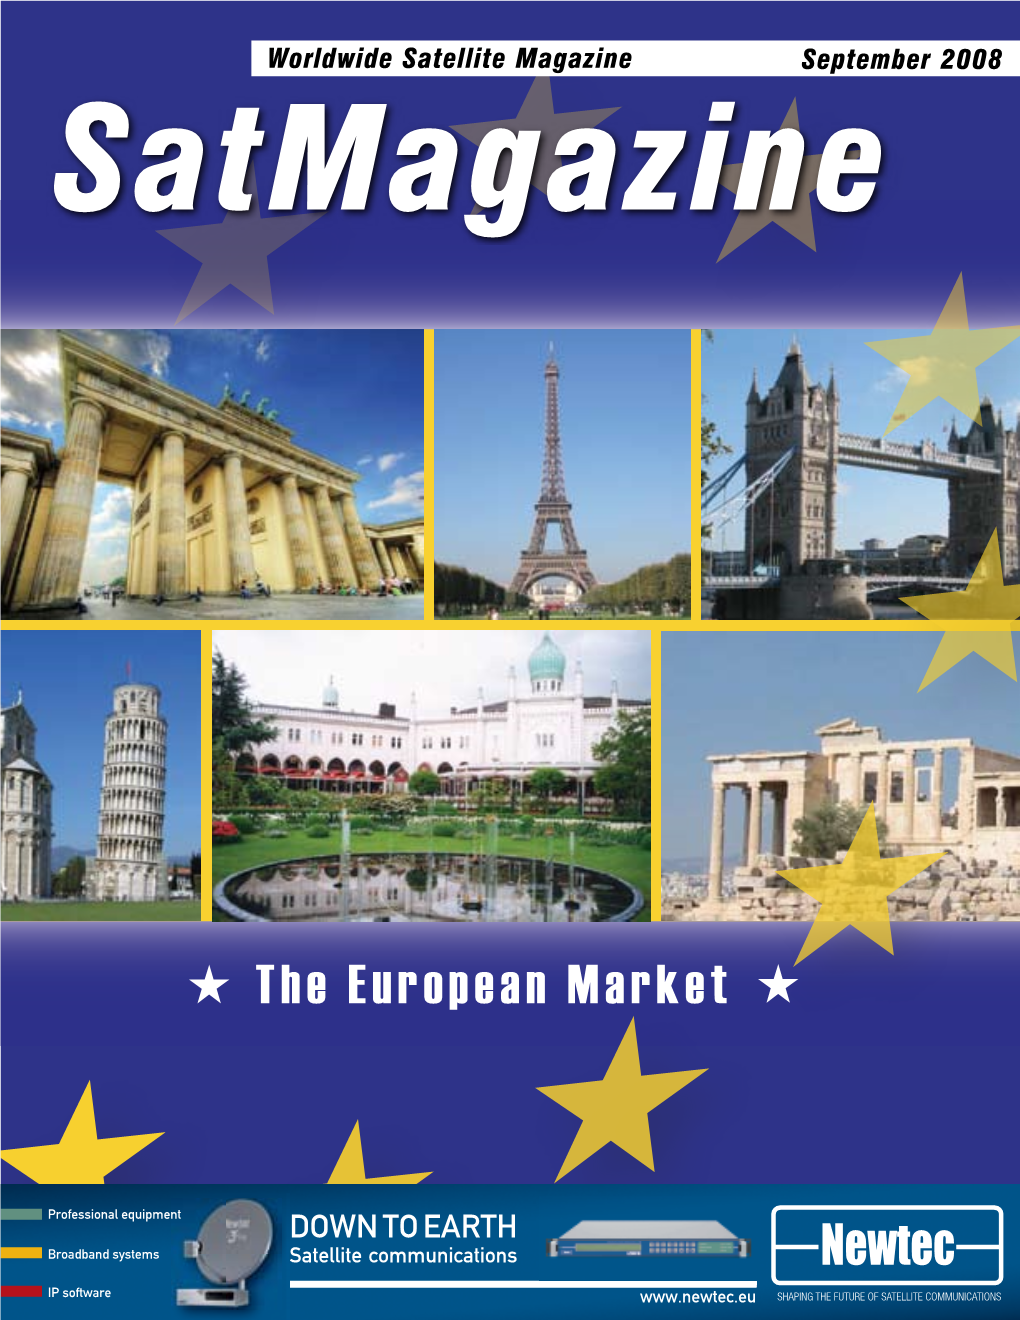 The European Market